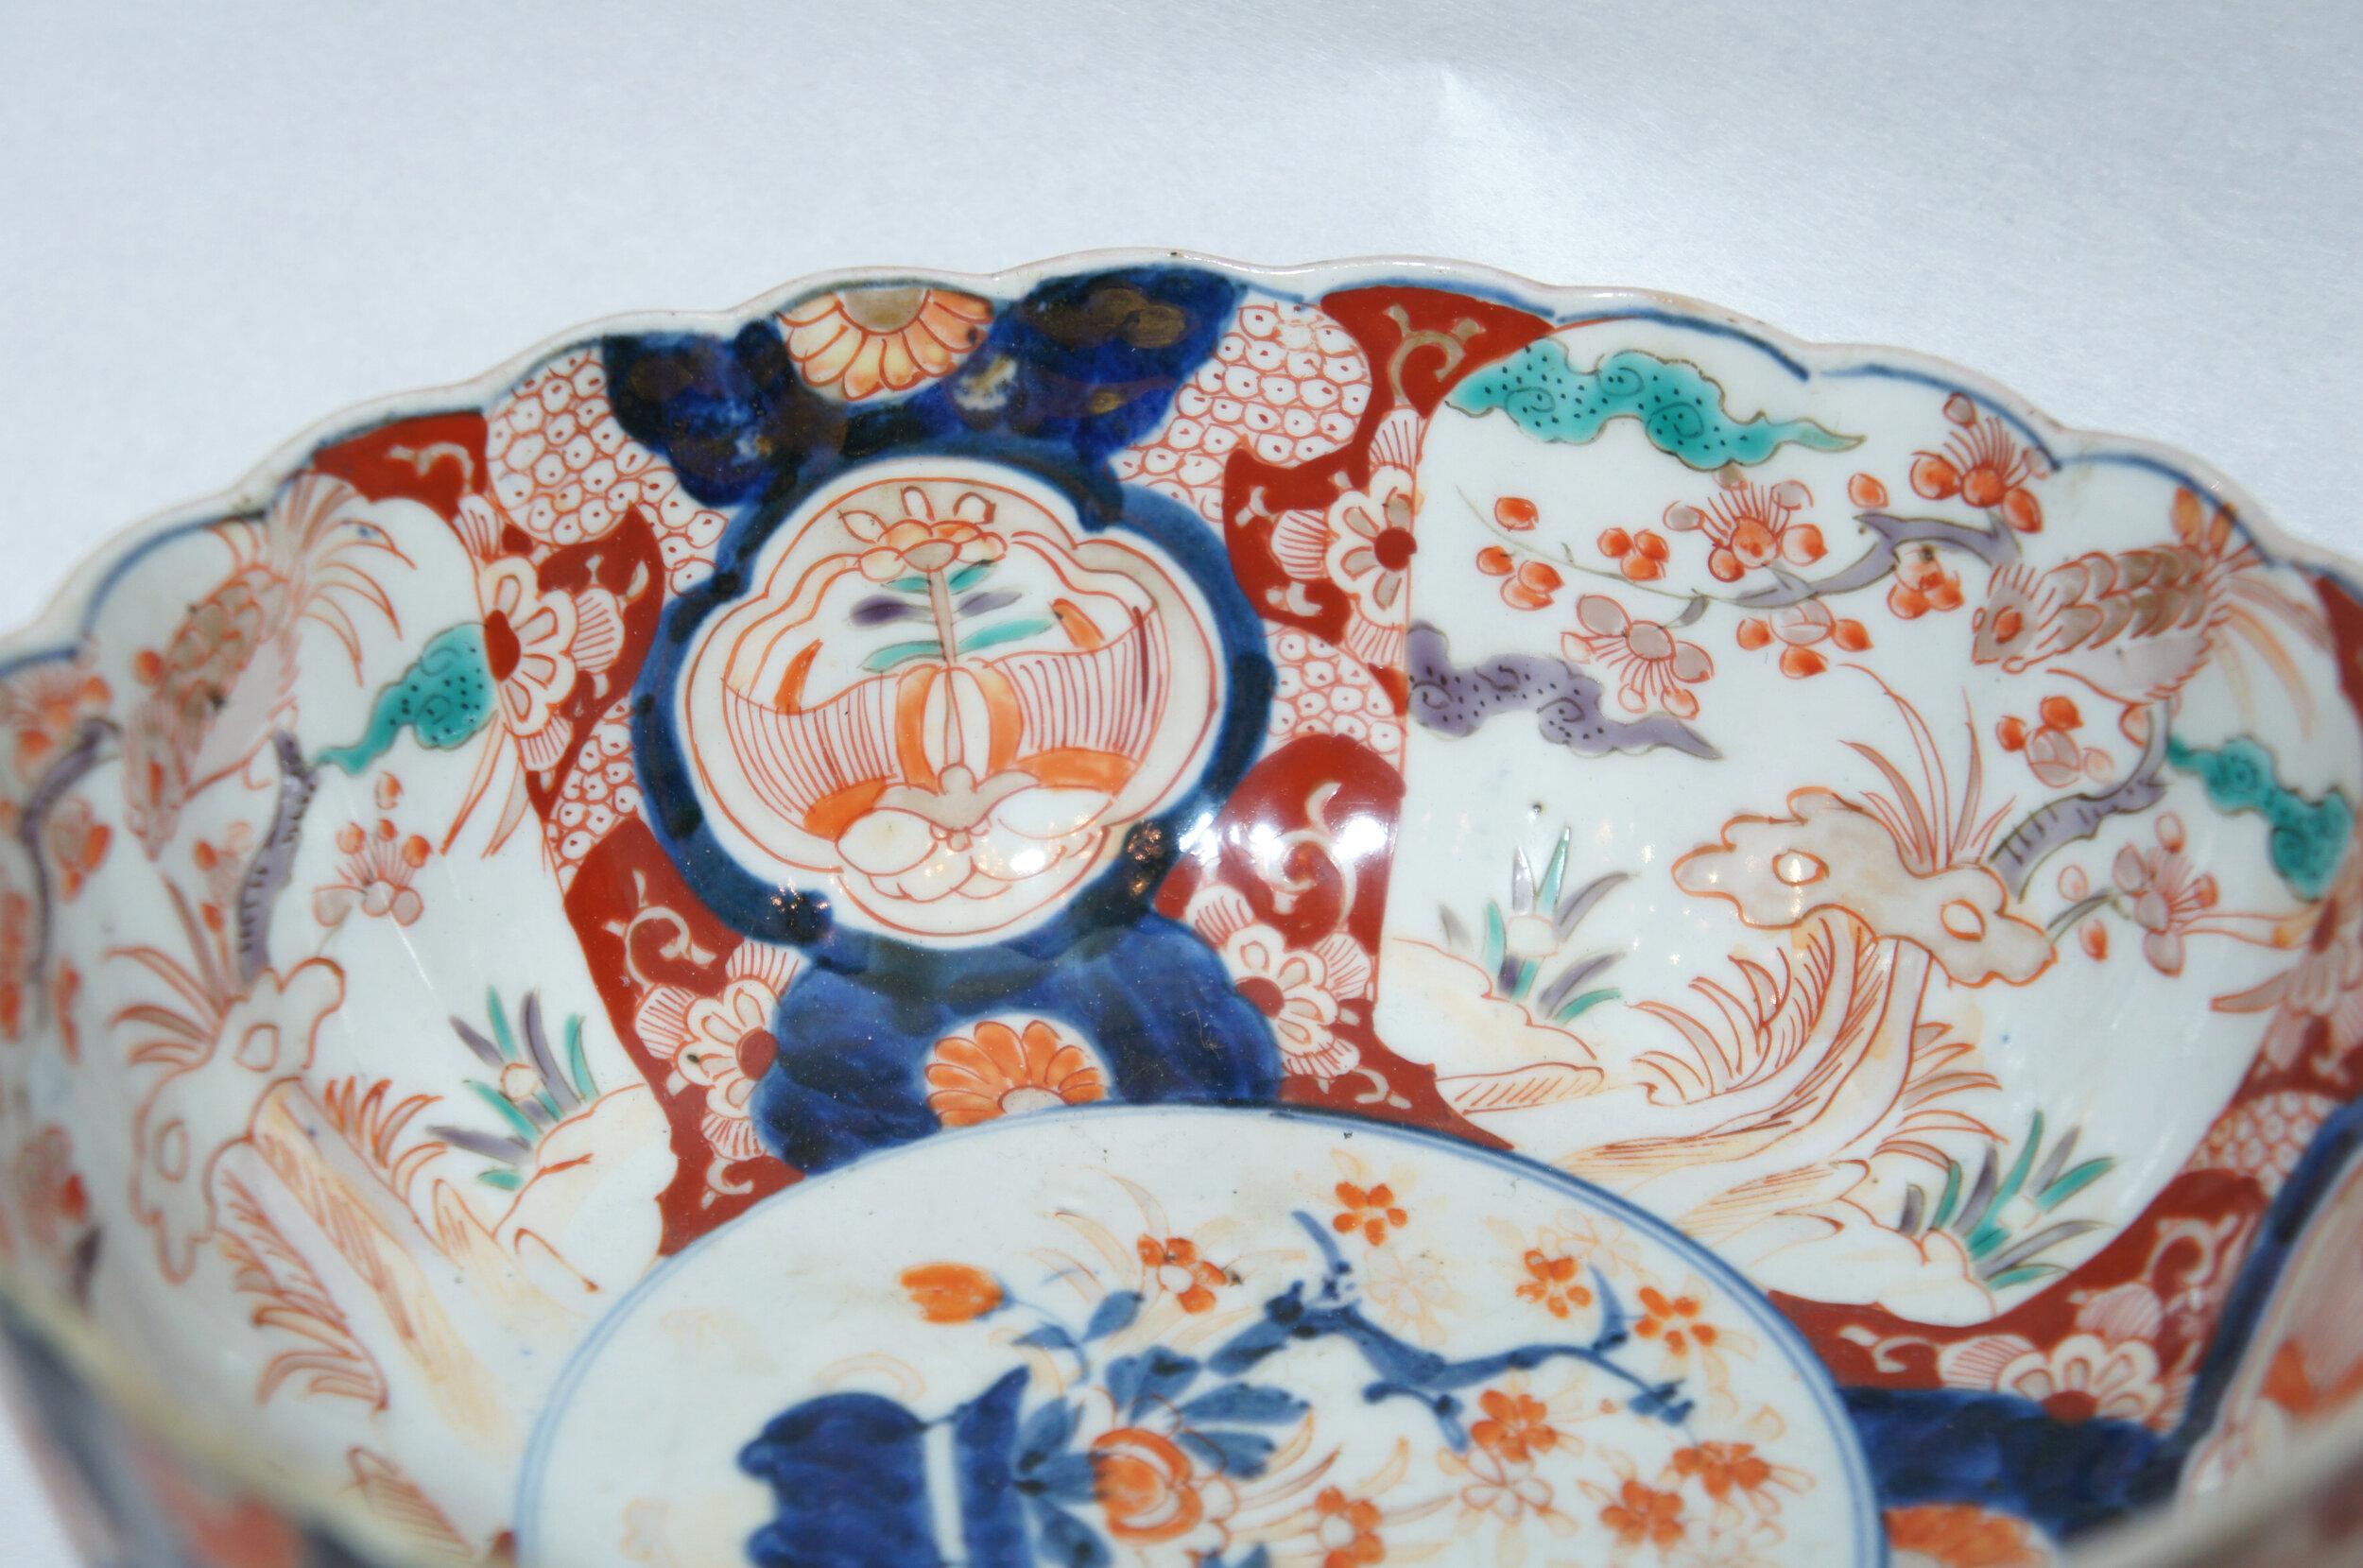 Diese Servierschale ist aus Porzellan und wurde in Japan um 1900 in der Meiji-Ära hergestellt.
Es ist alles handbemalt. Sie wurde im Süden Japans im Imari-Stil (Imari-Ware) hergestellt.

Abmessungen:
21 x 21 x H9 cm

Imari-Ware ist eine westliche